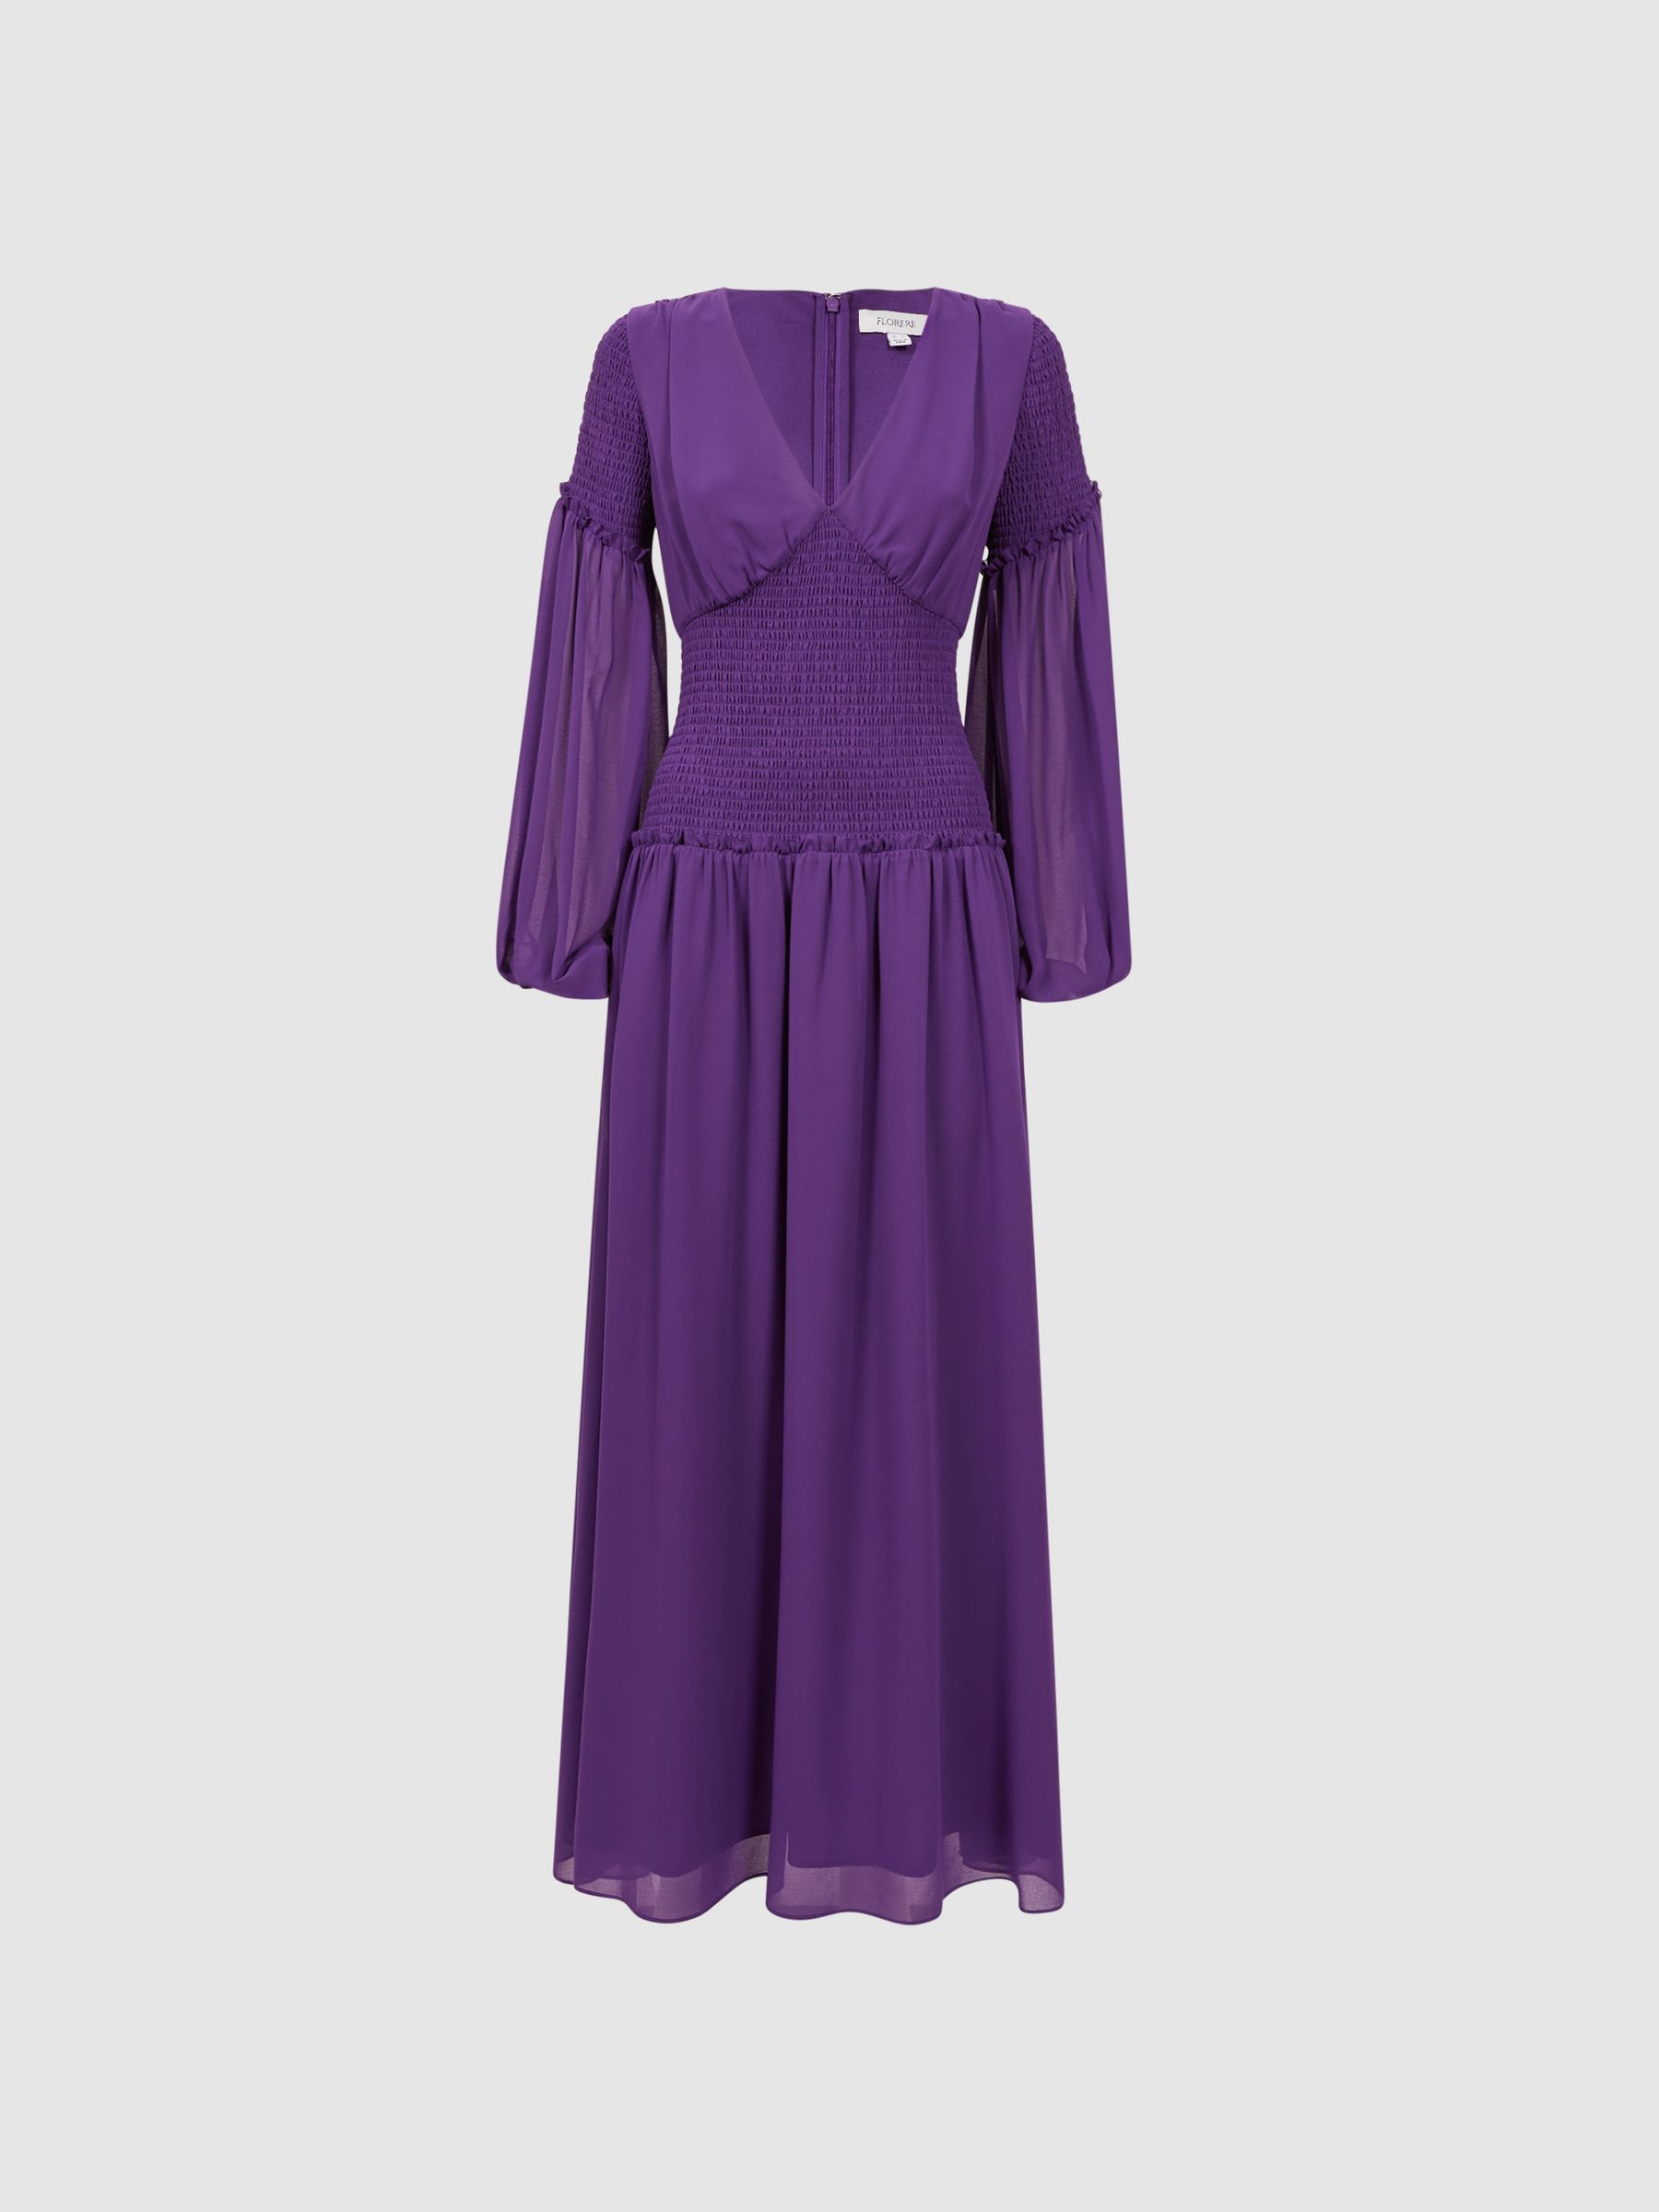 Florere Plunge Neck Shirred Maxi Dress in Dark Purple - REISS